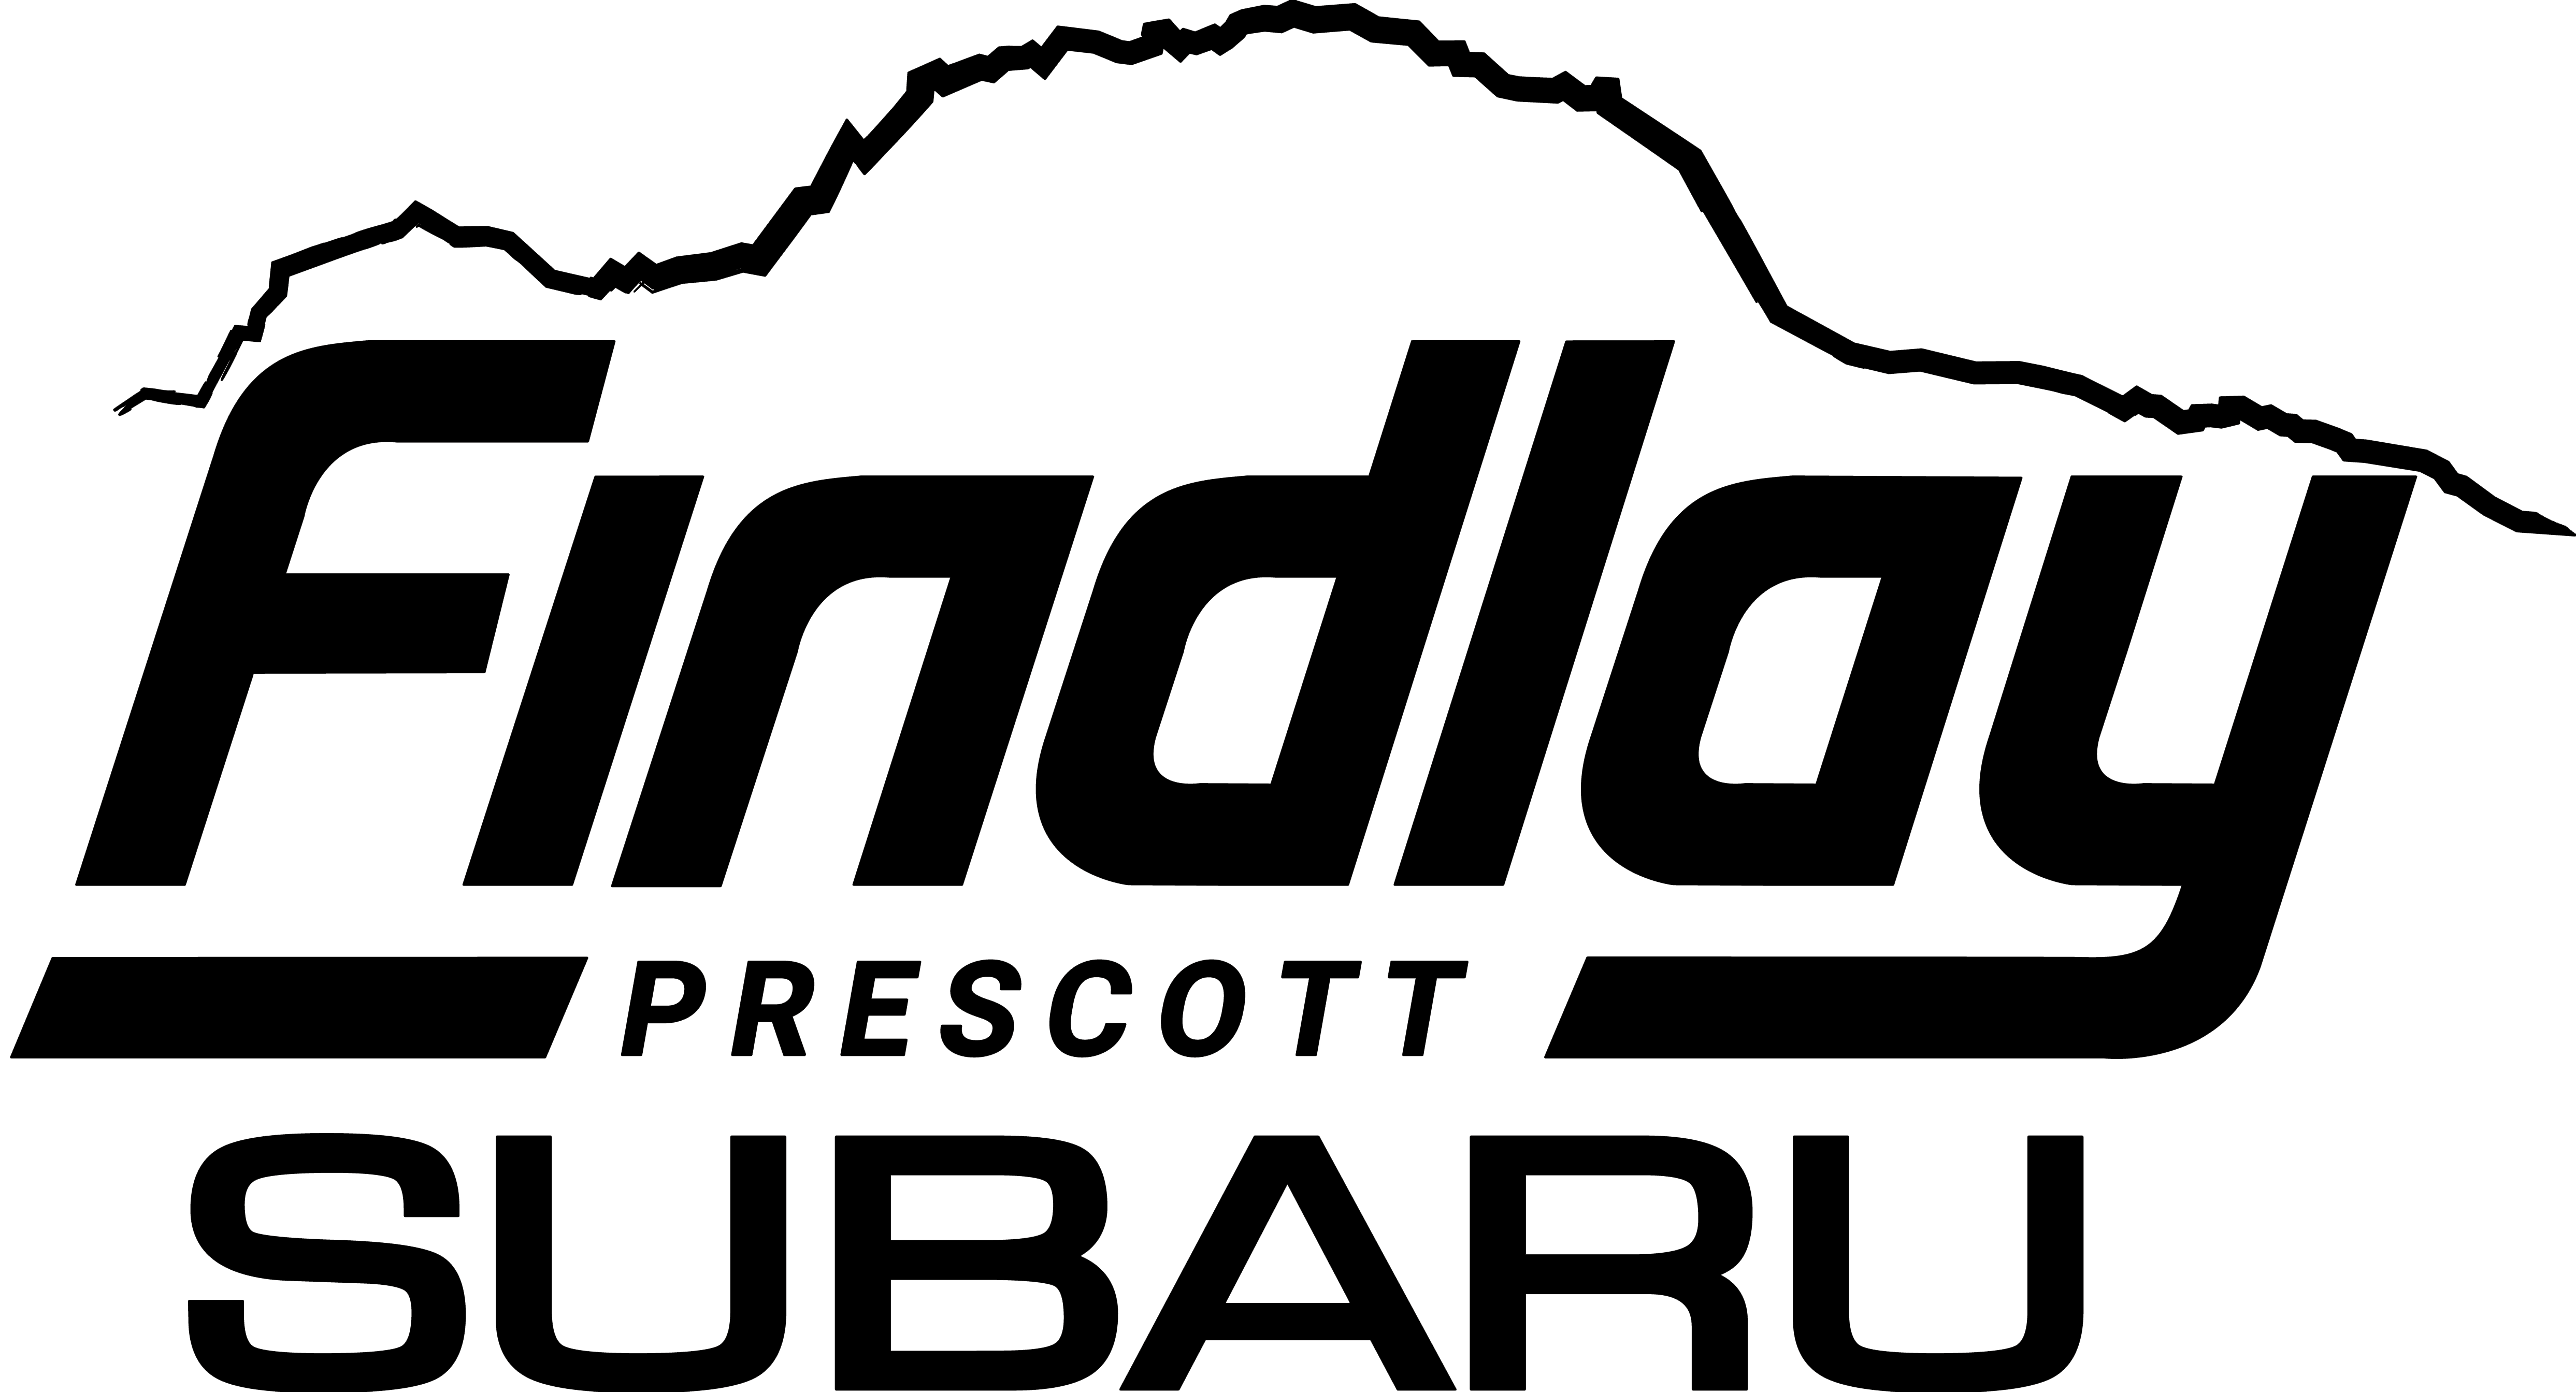 Findlay Subaru Prescott Logo